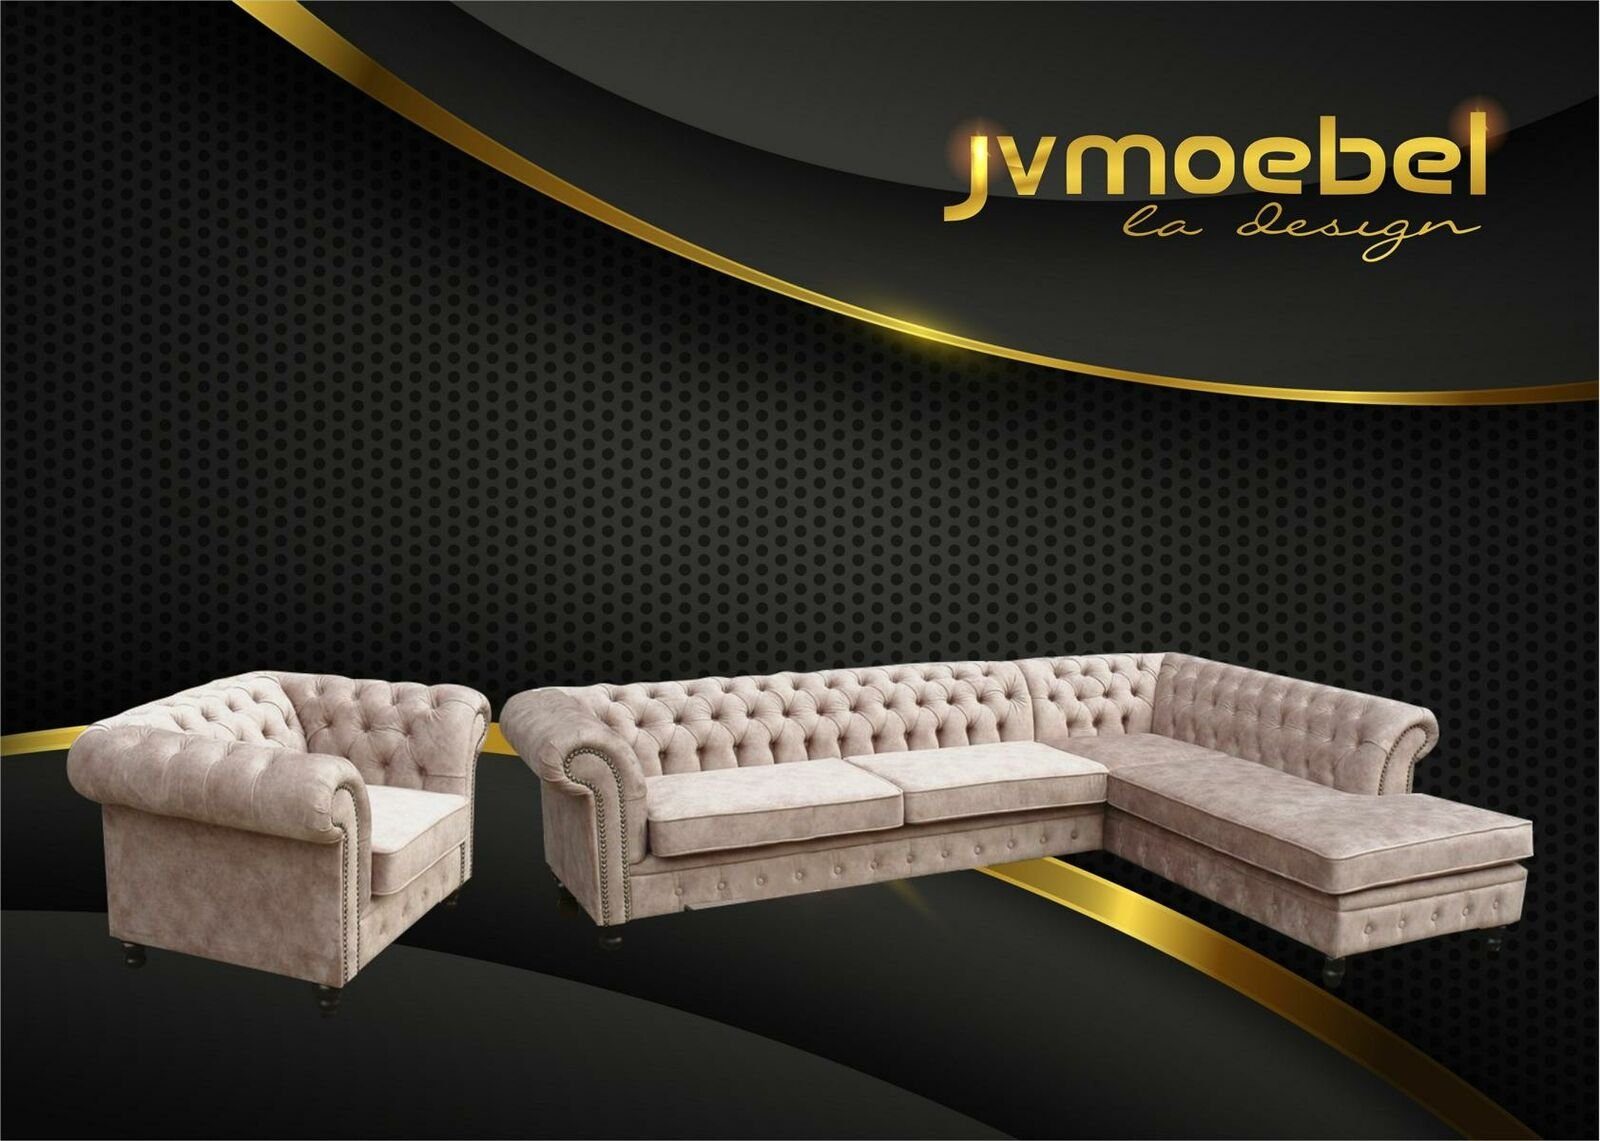 JVmoebel Ecksofa, Ecksofa Sofa Couch Polster Chesterfield Design Luxus Möbel Beige | Ecksofas